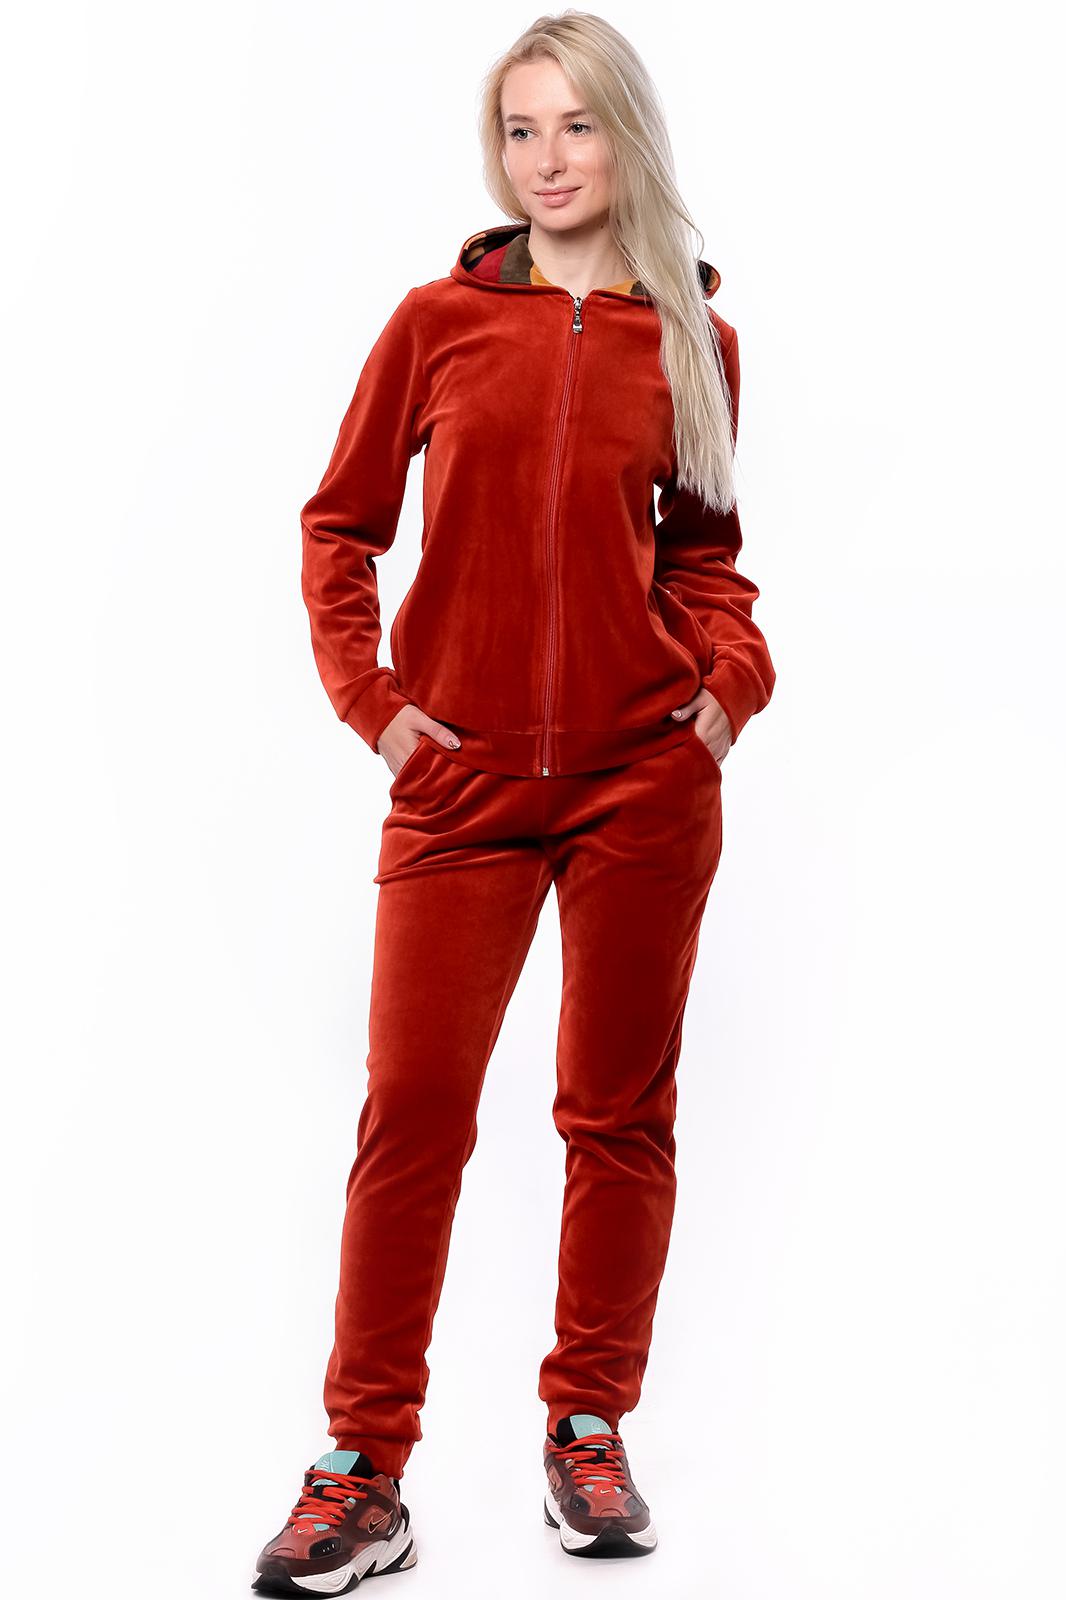 Спортивные костюмы red. Красный велюровый костюм. Красный велюровый спорт костюм. Спортивный костюм бордового цвета. Костюм из велюра красный женский.